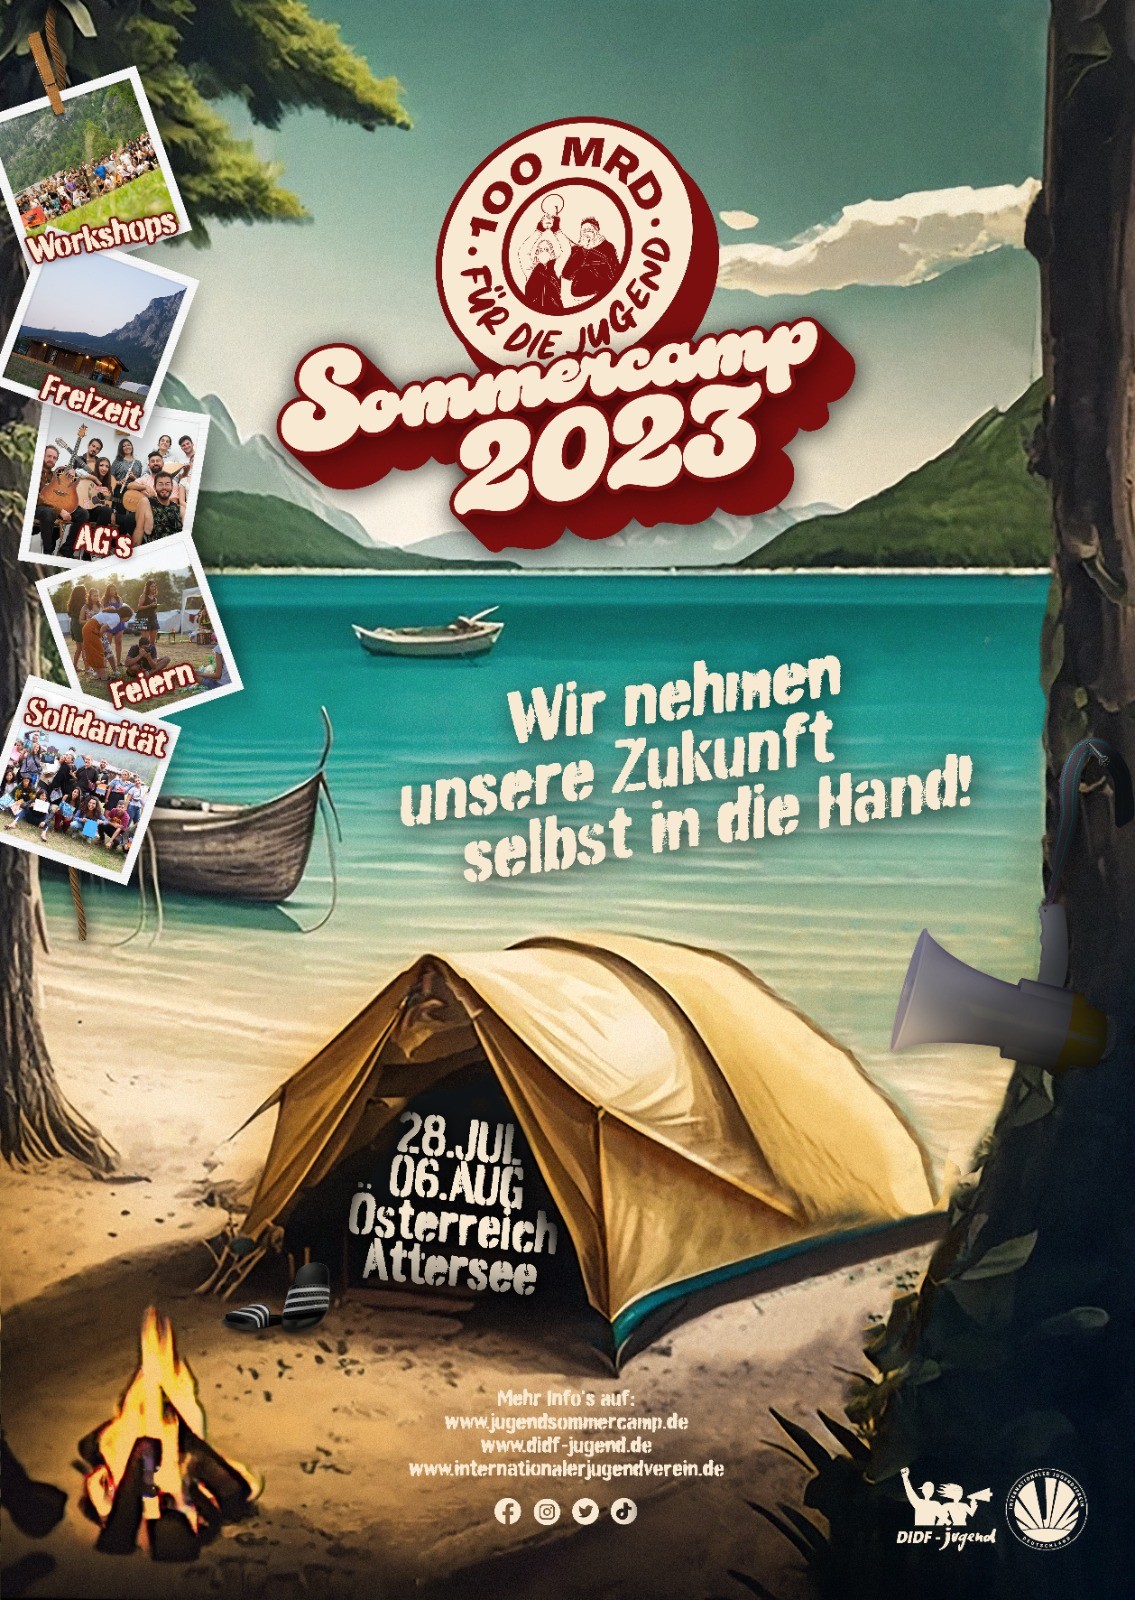 Sommercamp 2023: Wir nehmen unsere Zukunft selbst in die Hand!